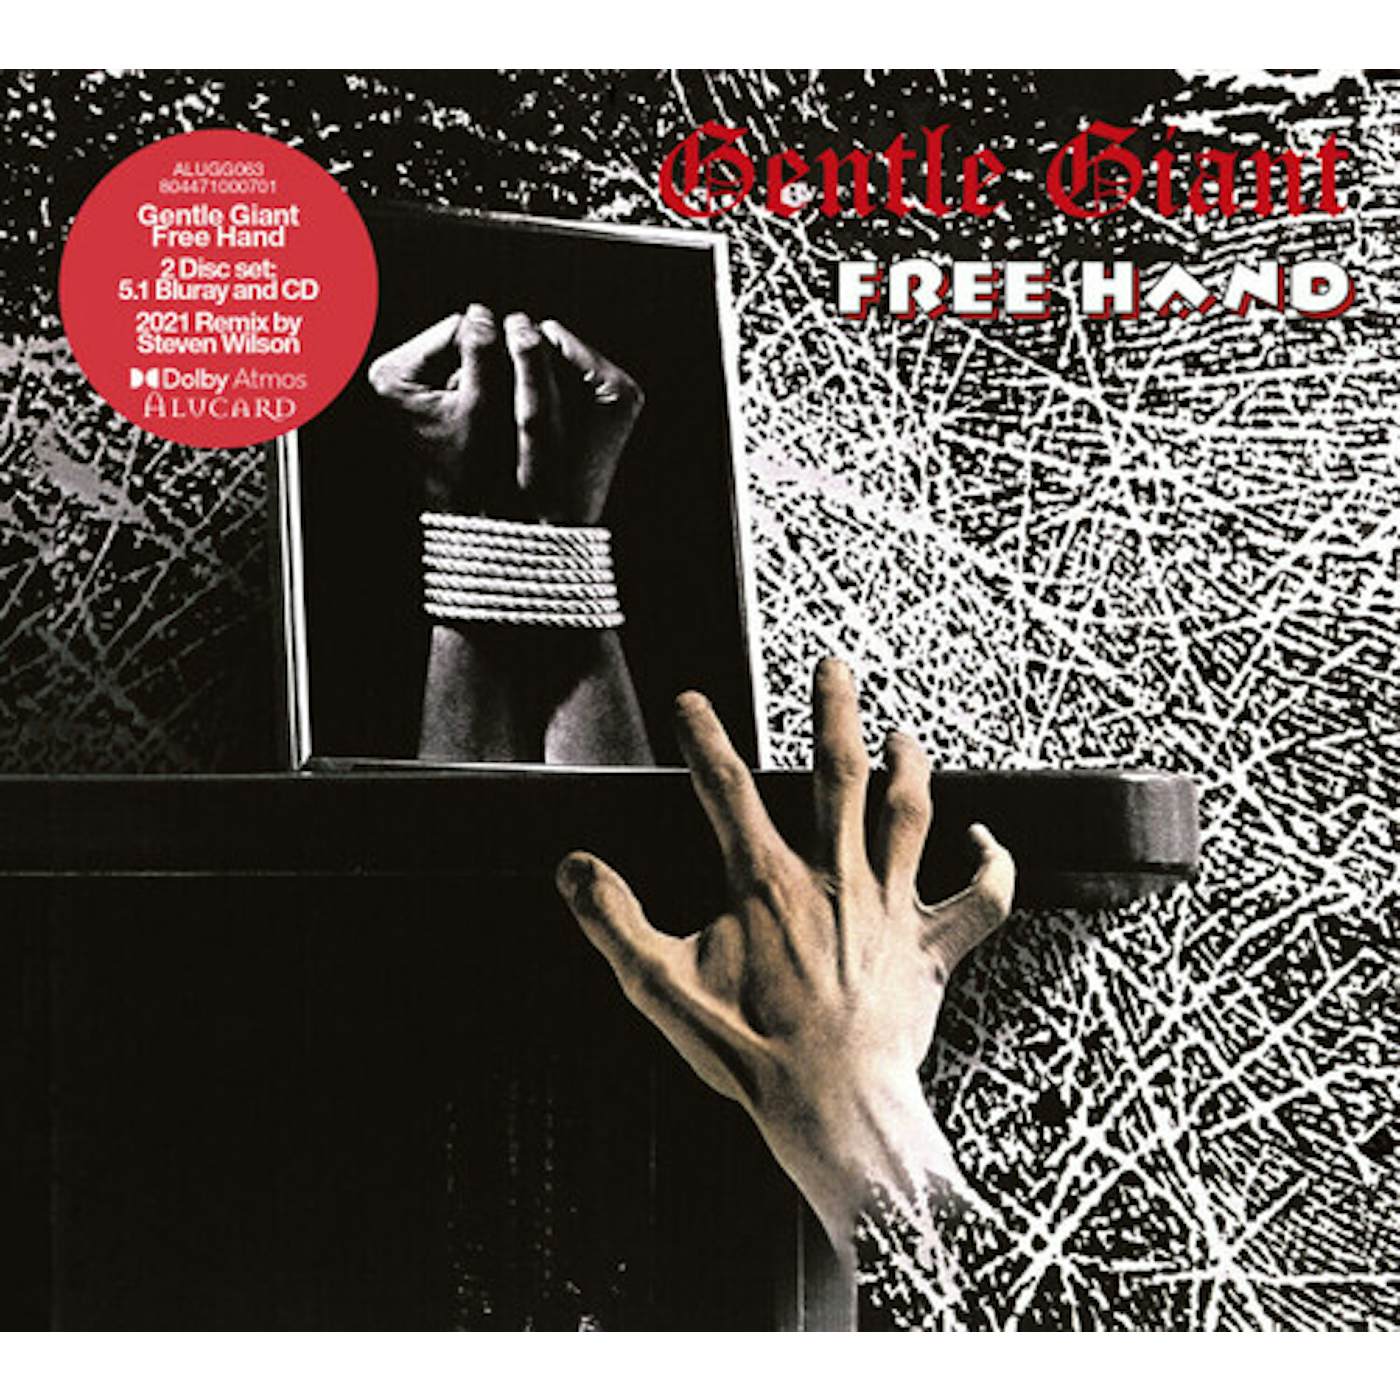 Gentle Giant FREE HAND (5.1 & 2.0 STEVEN WILSON MIX) CD